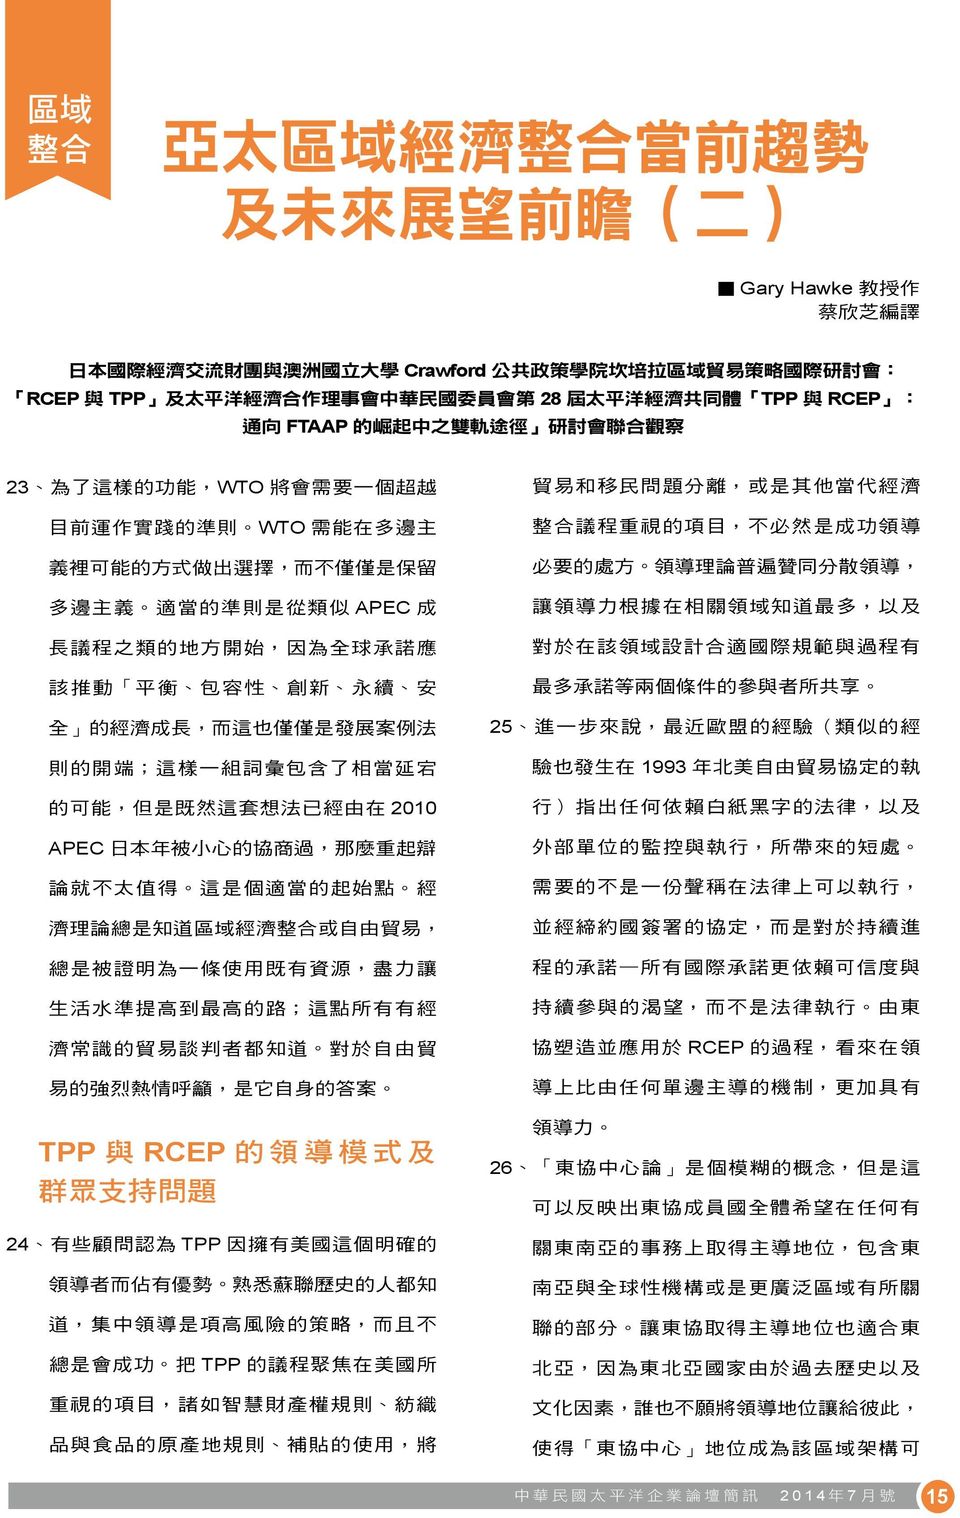 TPP 與 RCEP : 通 向 FTAAP 的 崛 起 中 之 雙 軌 途 徑 研 討 會 聯 合 觀 察 23,WTO WTO, APEC,, ;, 2010 APEC,,, ;, TPP 與 RCEP 的 領 導